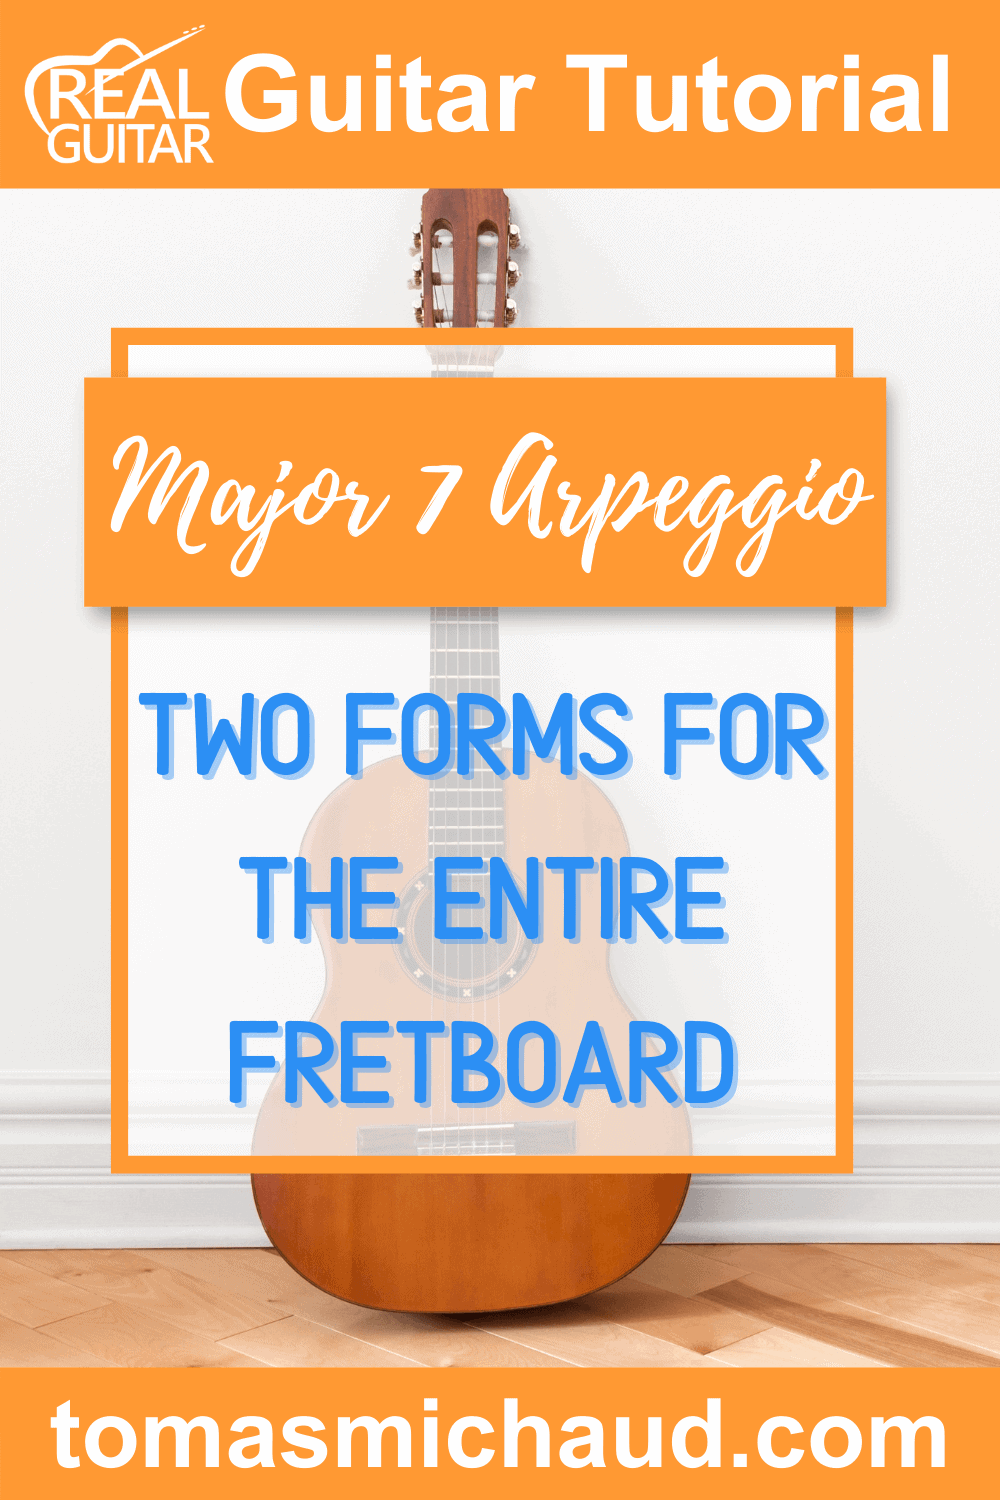 Major 7 Arpeggio: Two Forms For The Entire Fretboard